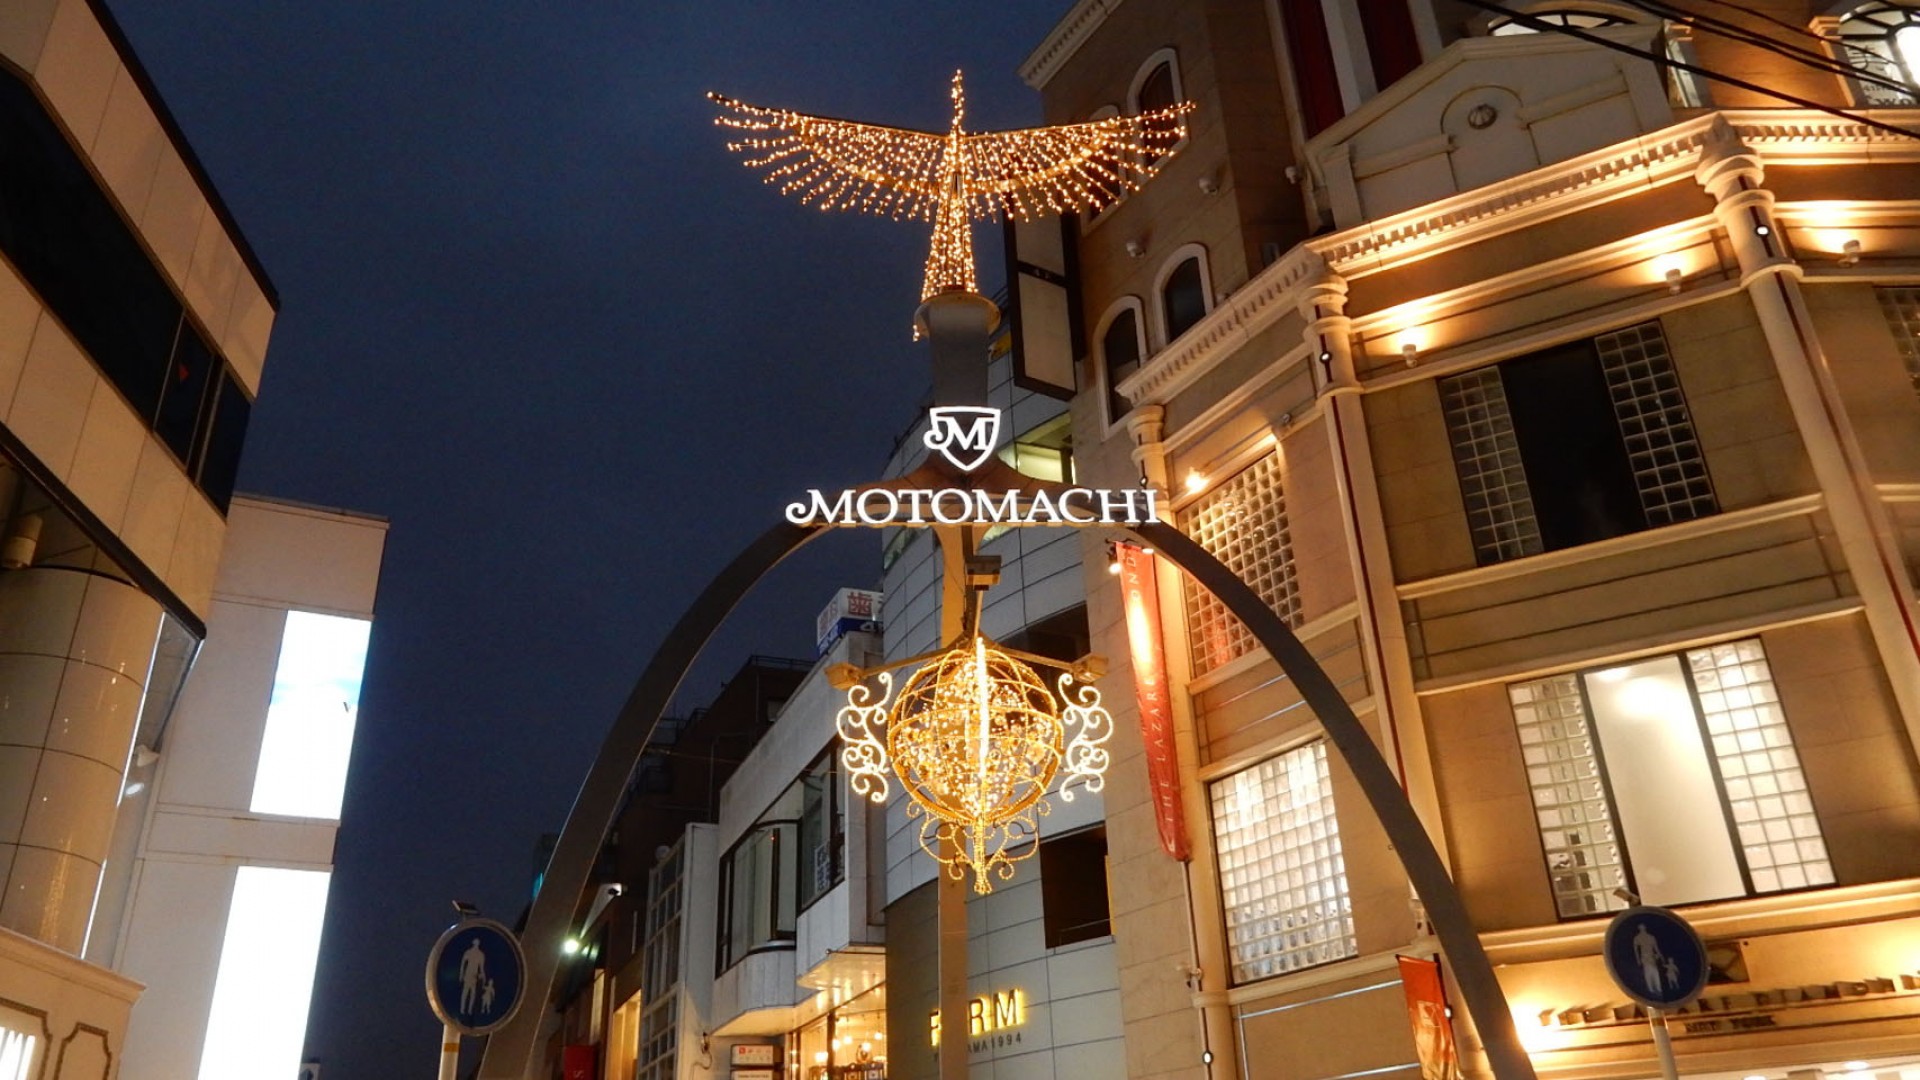 Les Illuminations de Motomachi